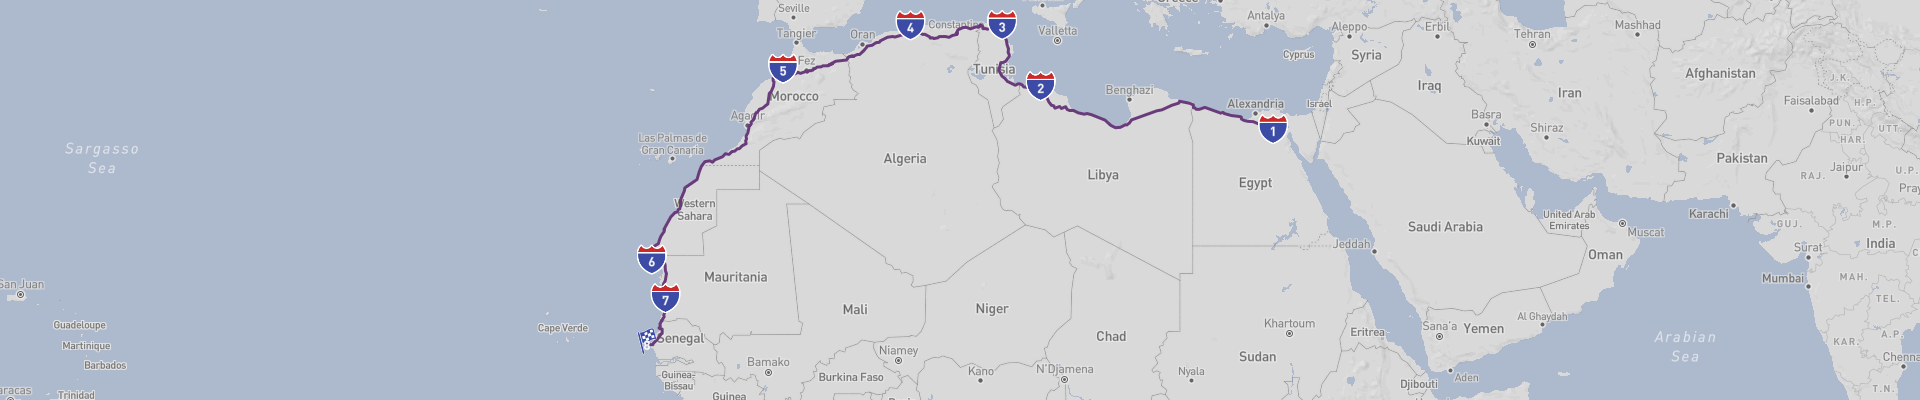 El Cairo a Dakar Viaje por carretera transafricano